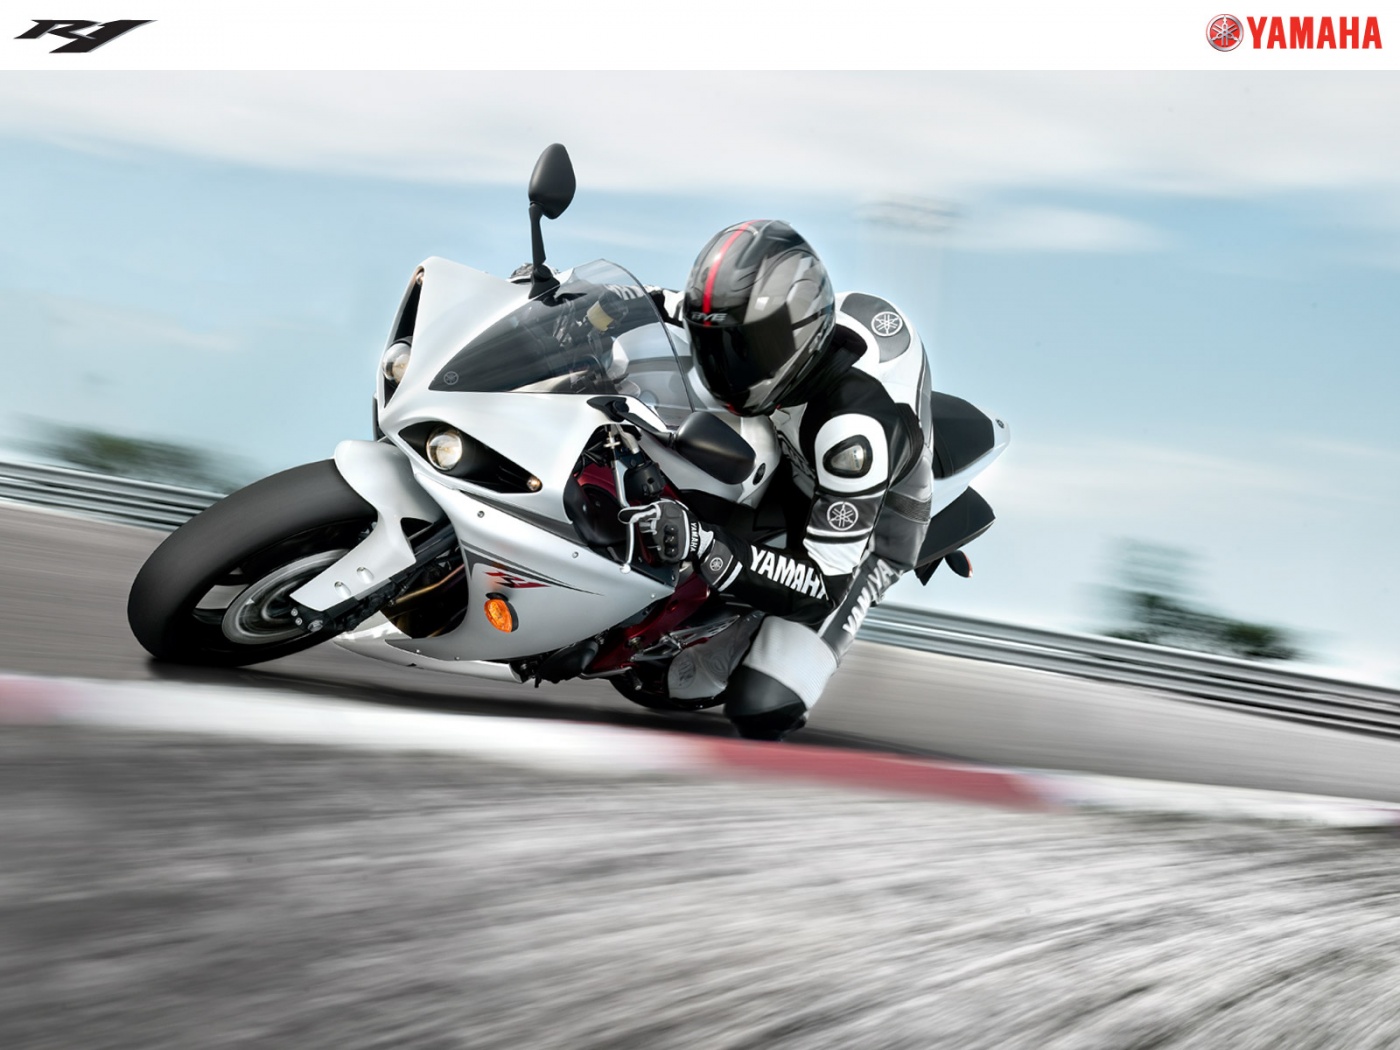 〓 日本高清晰极速概念摩托车跑车摄影壁纸欣赏::当前为类型:::欧莱凯图库素材酷图